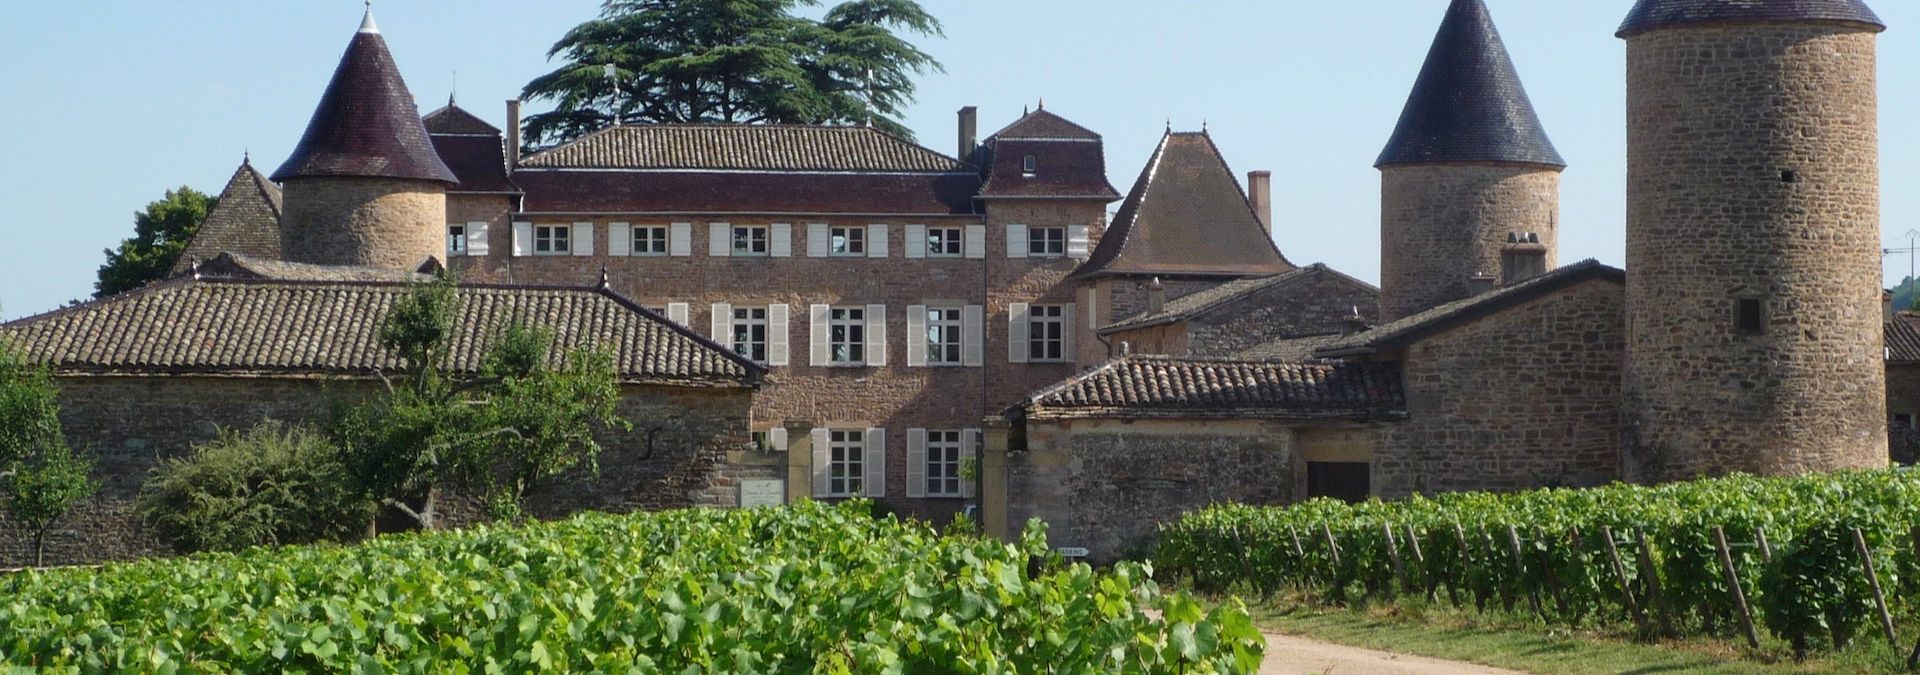 Château de Chasselas - Rue des Vignerons